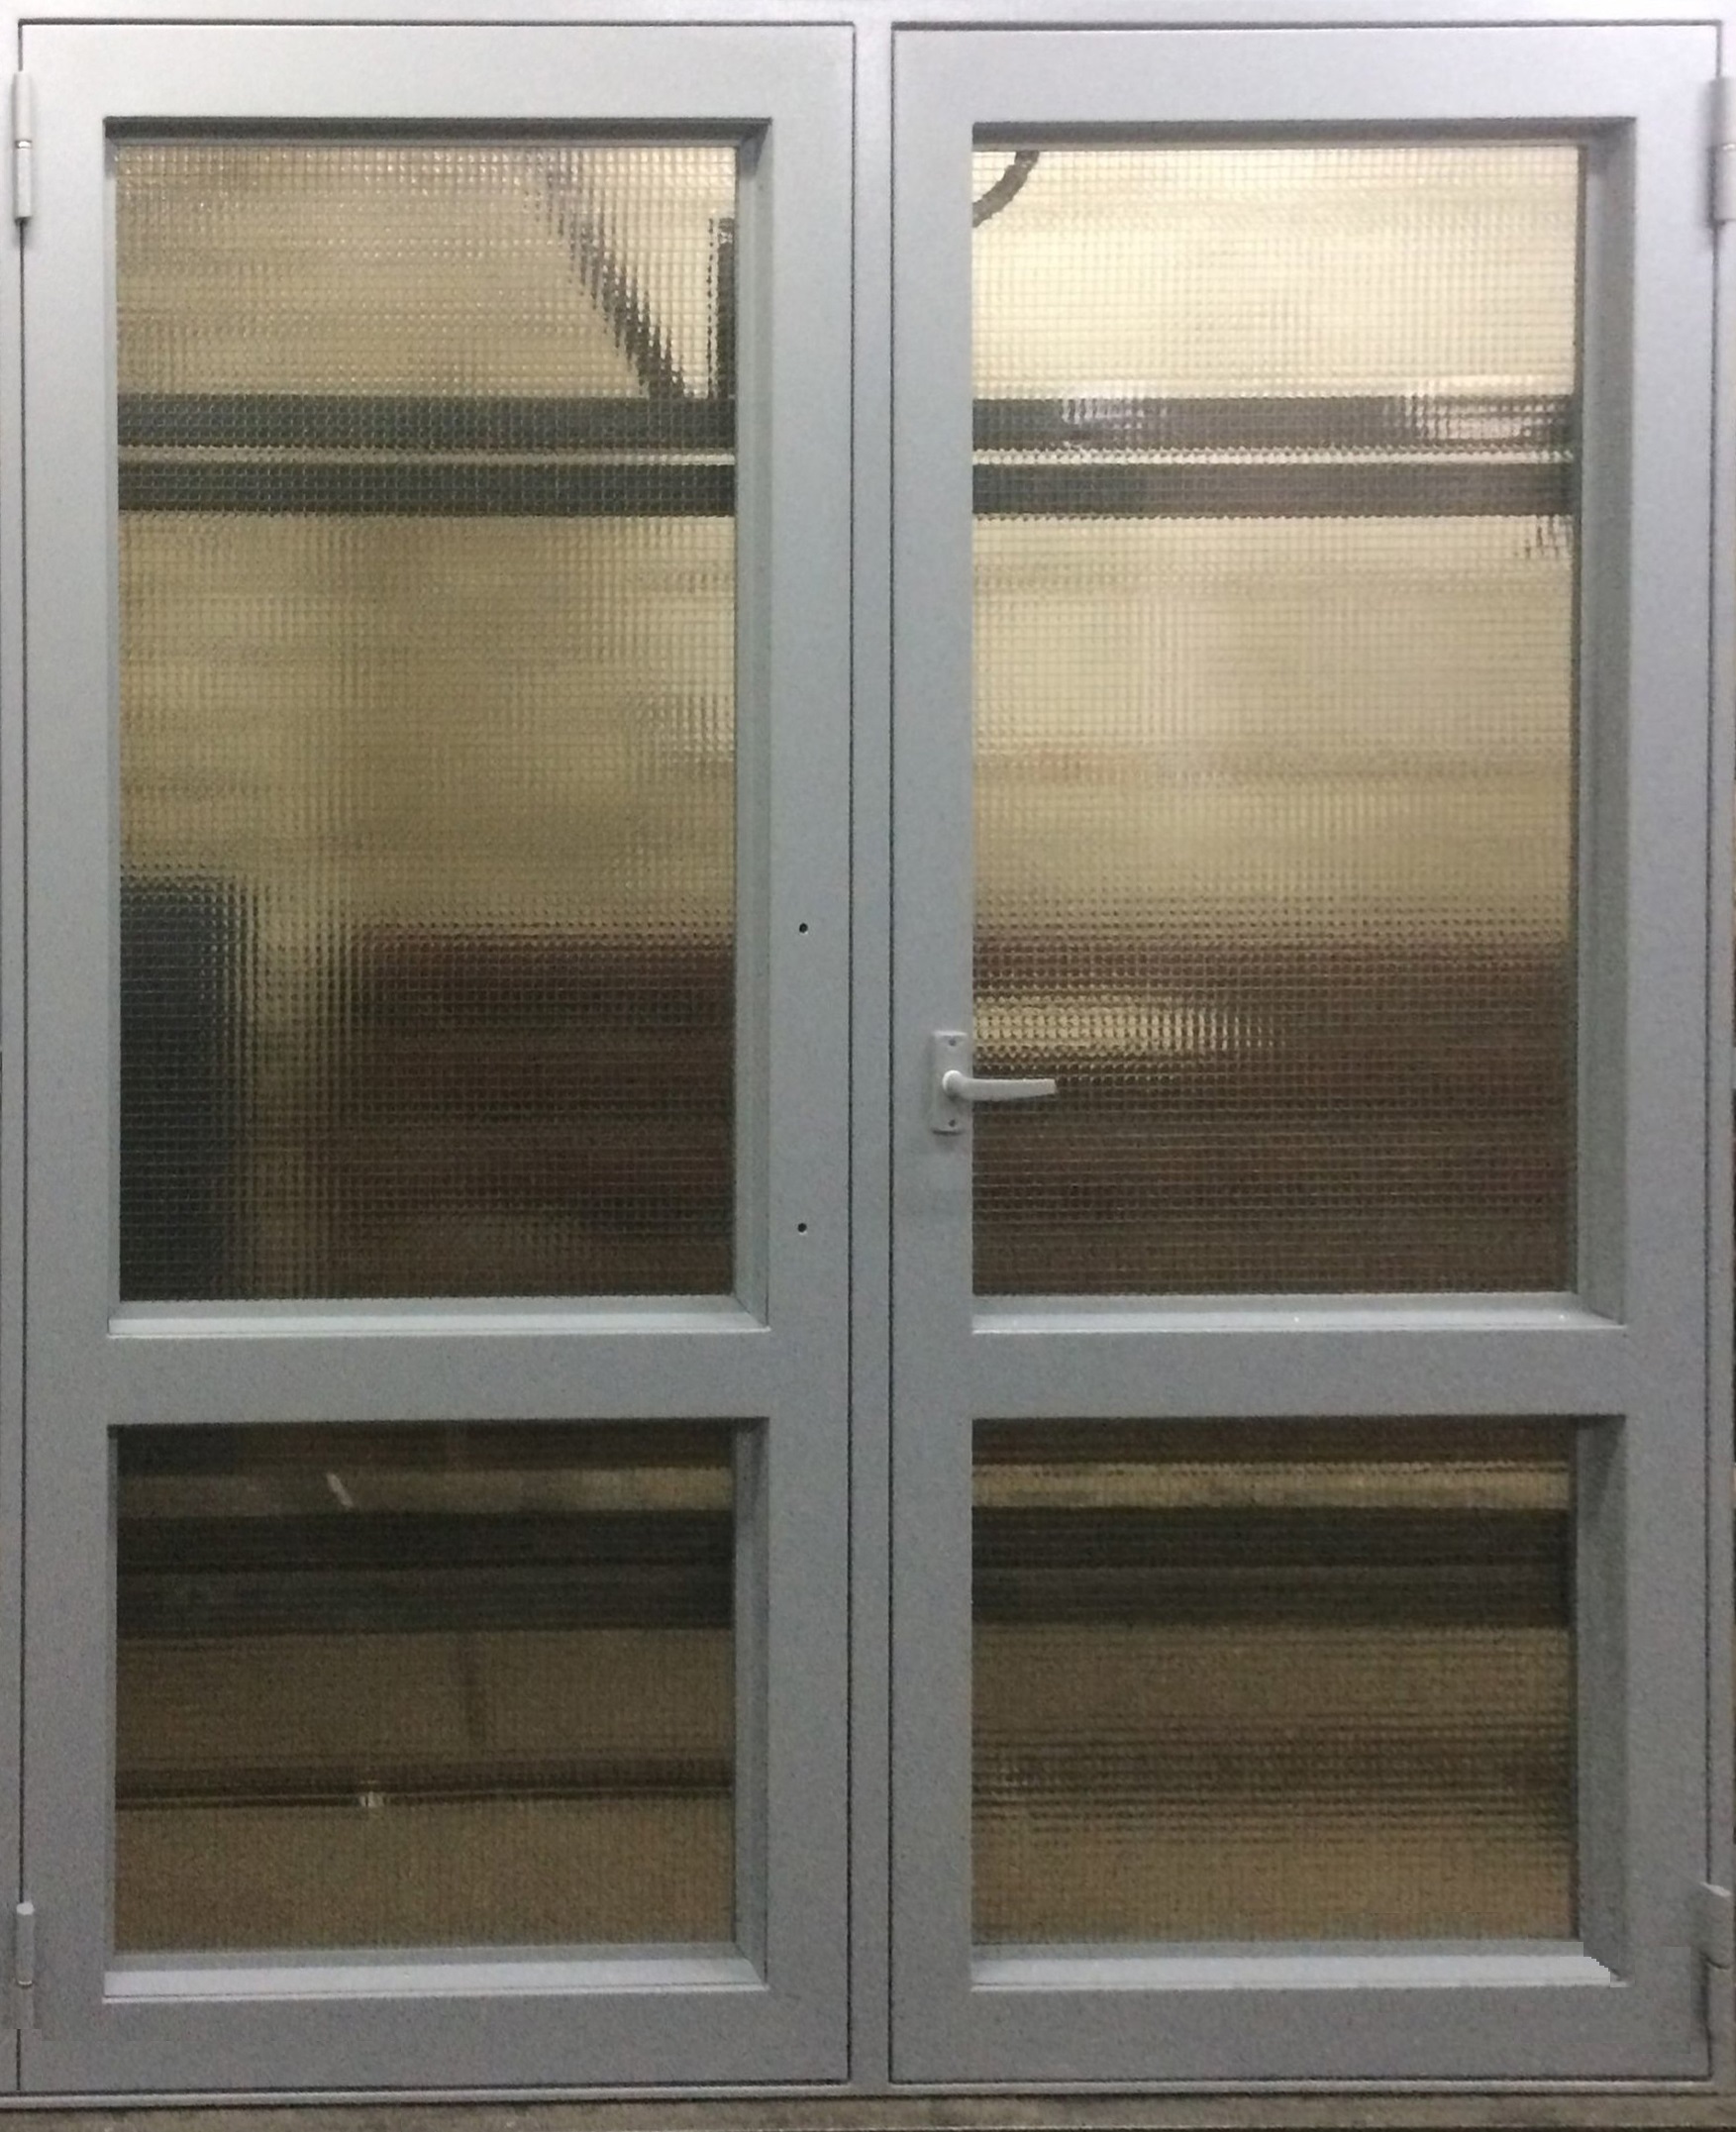 Двупольная металлическая дверь светопрозрачная, остекление армированное. Для административных и промышленных зданий